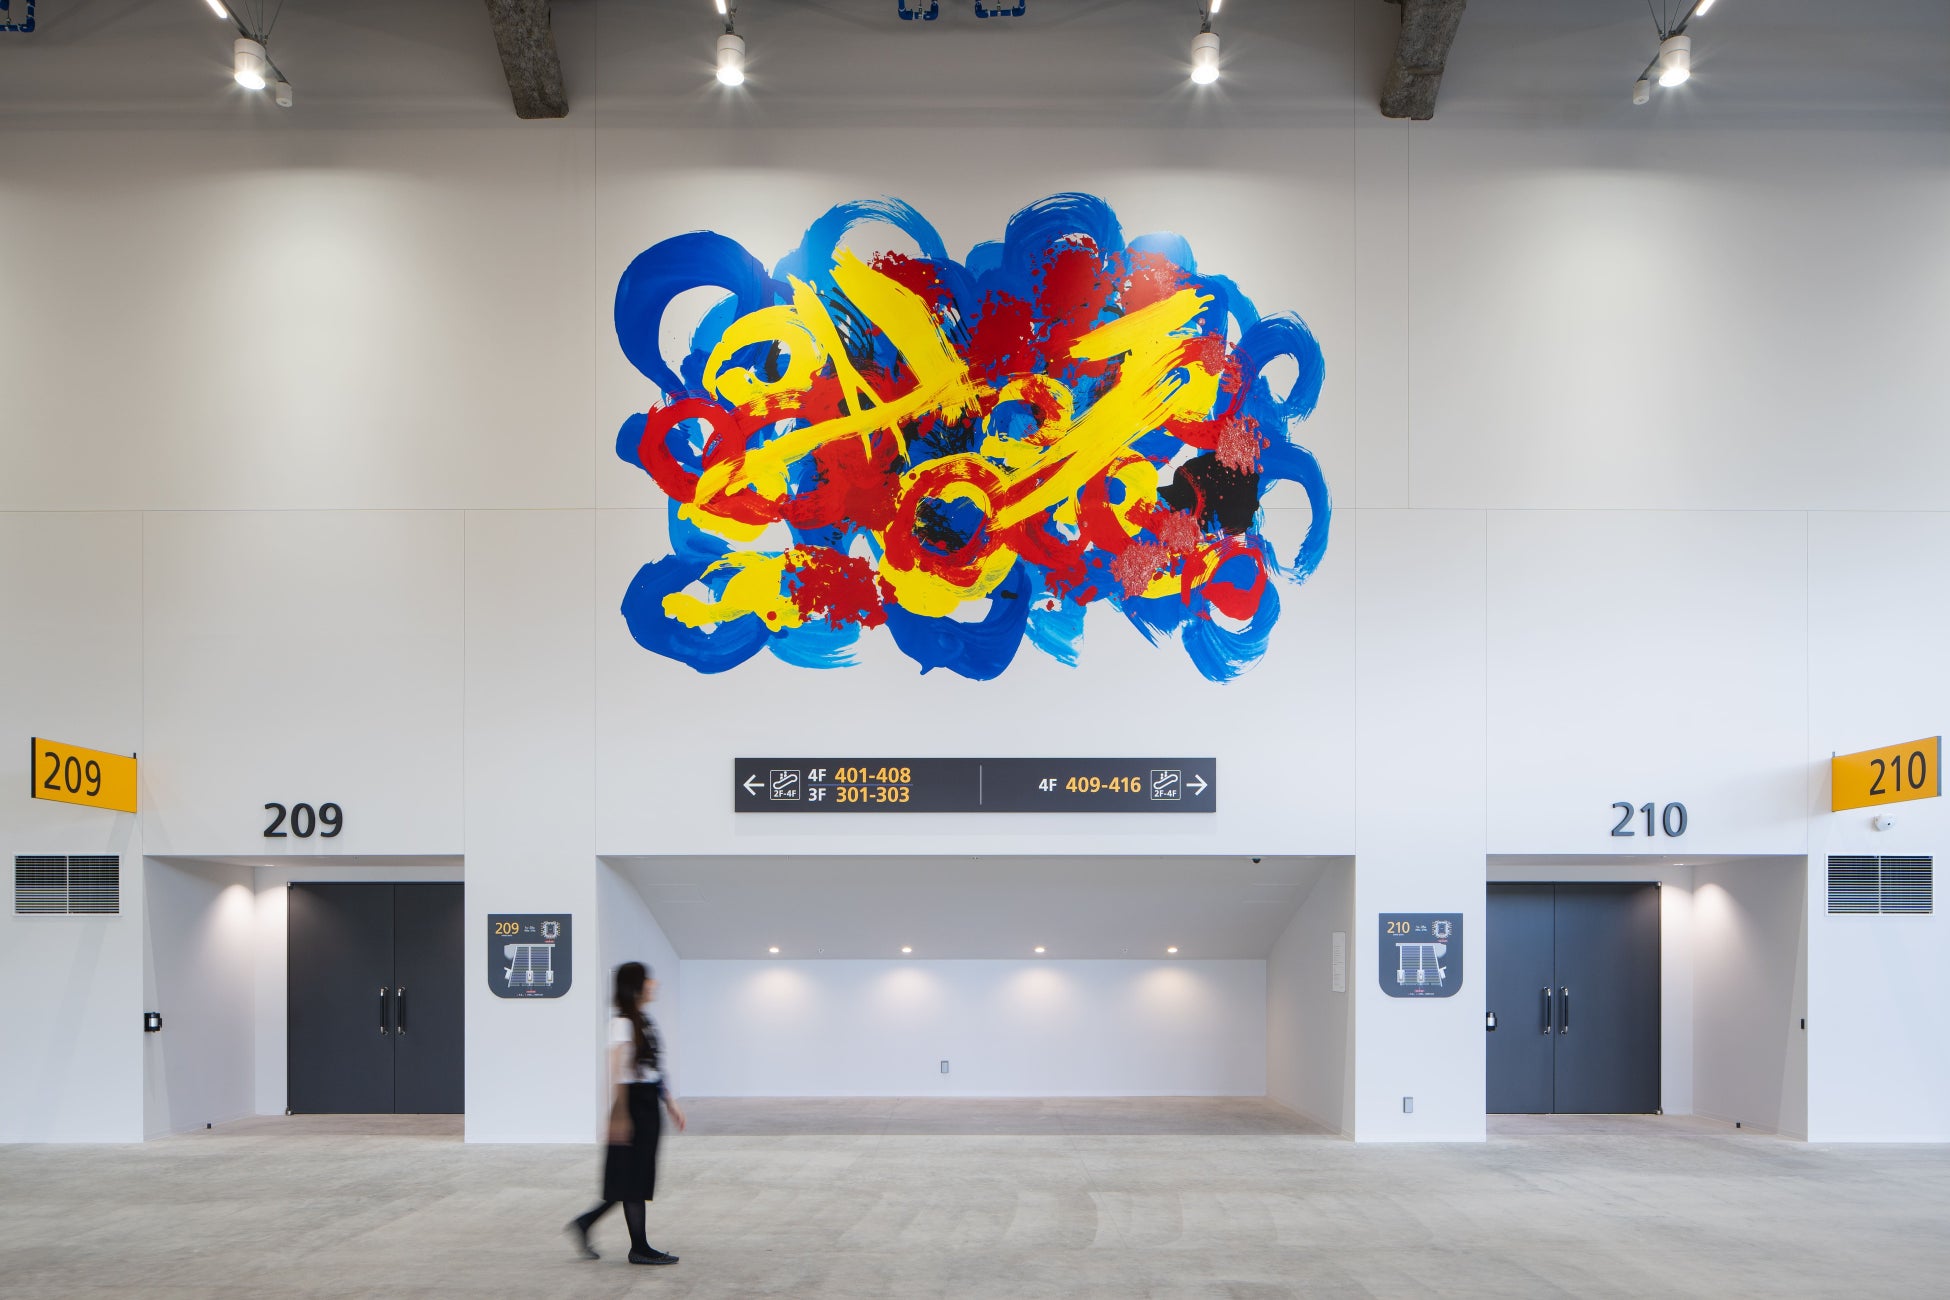 ヘラルボニー、「LaLa arena TOKYO-BAY」の2階コンコース壁面に巨大アートを装飾